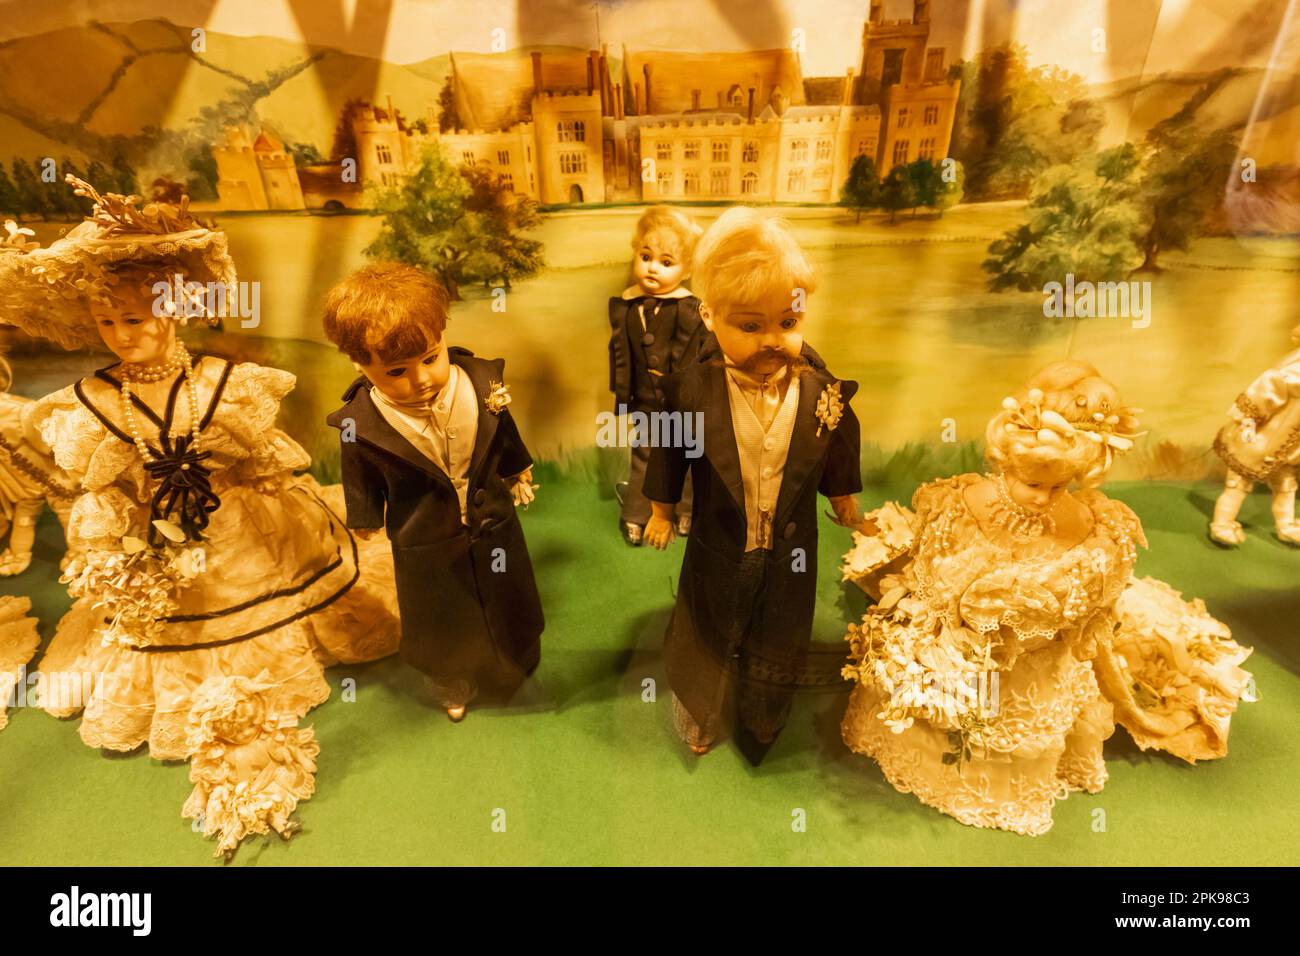 England, Kent, Penshurst, Penshurst Place and Gardens, das Spielzeugmuseum, Ausstellung von Vintage Dolls mit einer edwardianischen Hochzeitsgruppe Stockfoto